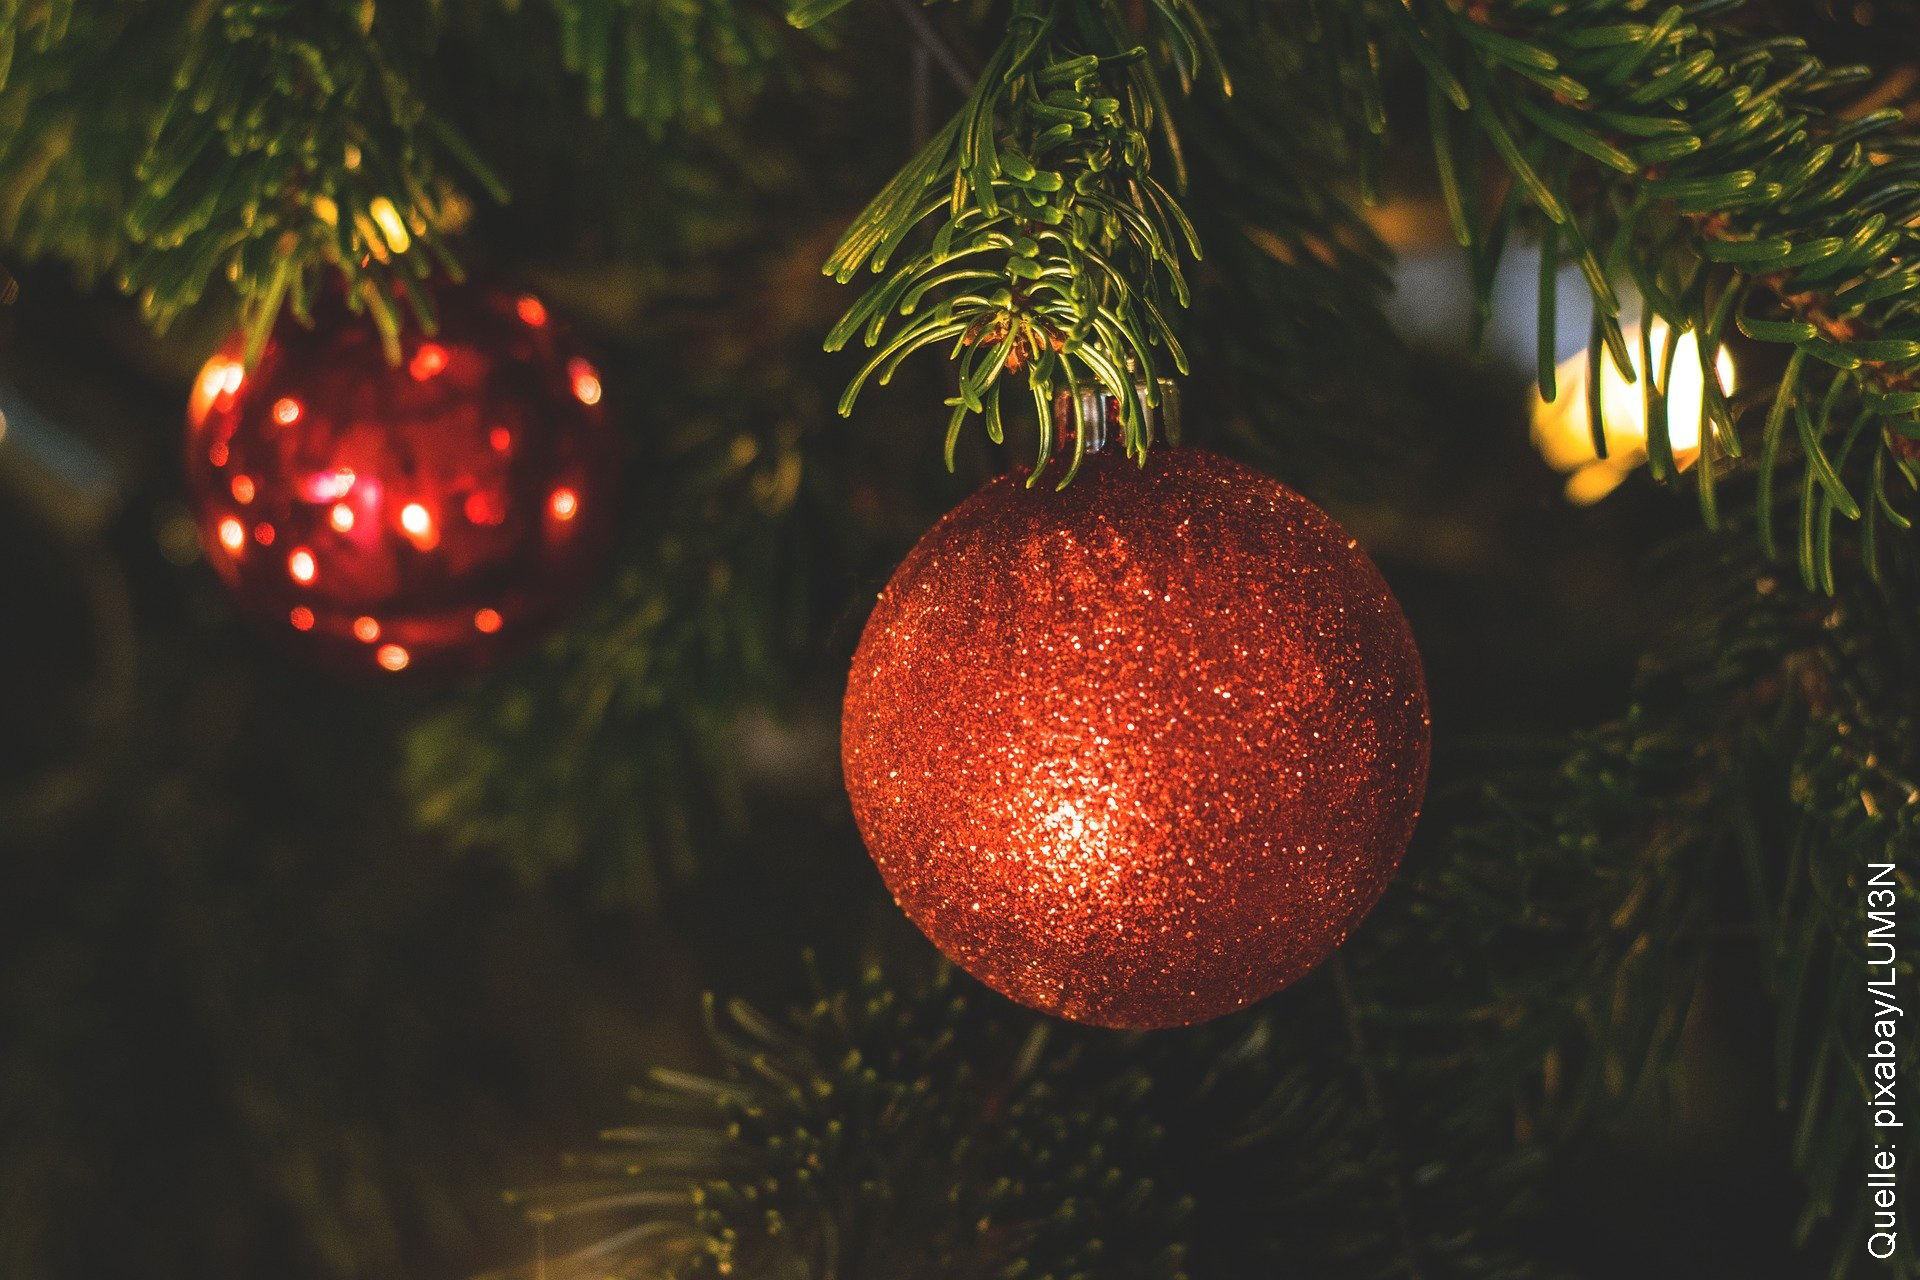 Weihnachtsbäume kamen je nach Quellenangabe im 15. bzw.16. Jahrhundert in Mode, aufgestellt etwa auf dem Rigaer Markt oder in Straßburger Zunfthäusern. Seit Beginn des 17. Jahrhunderts wurden Weihnachtsbäume neben mit Süßem und Äpfeln auch mit Kerzen geschmückt.